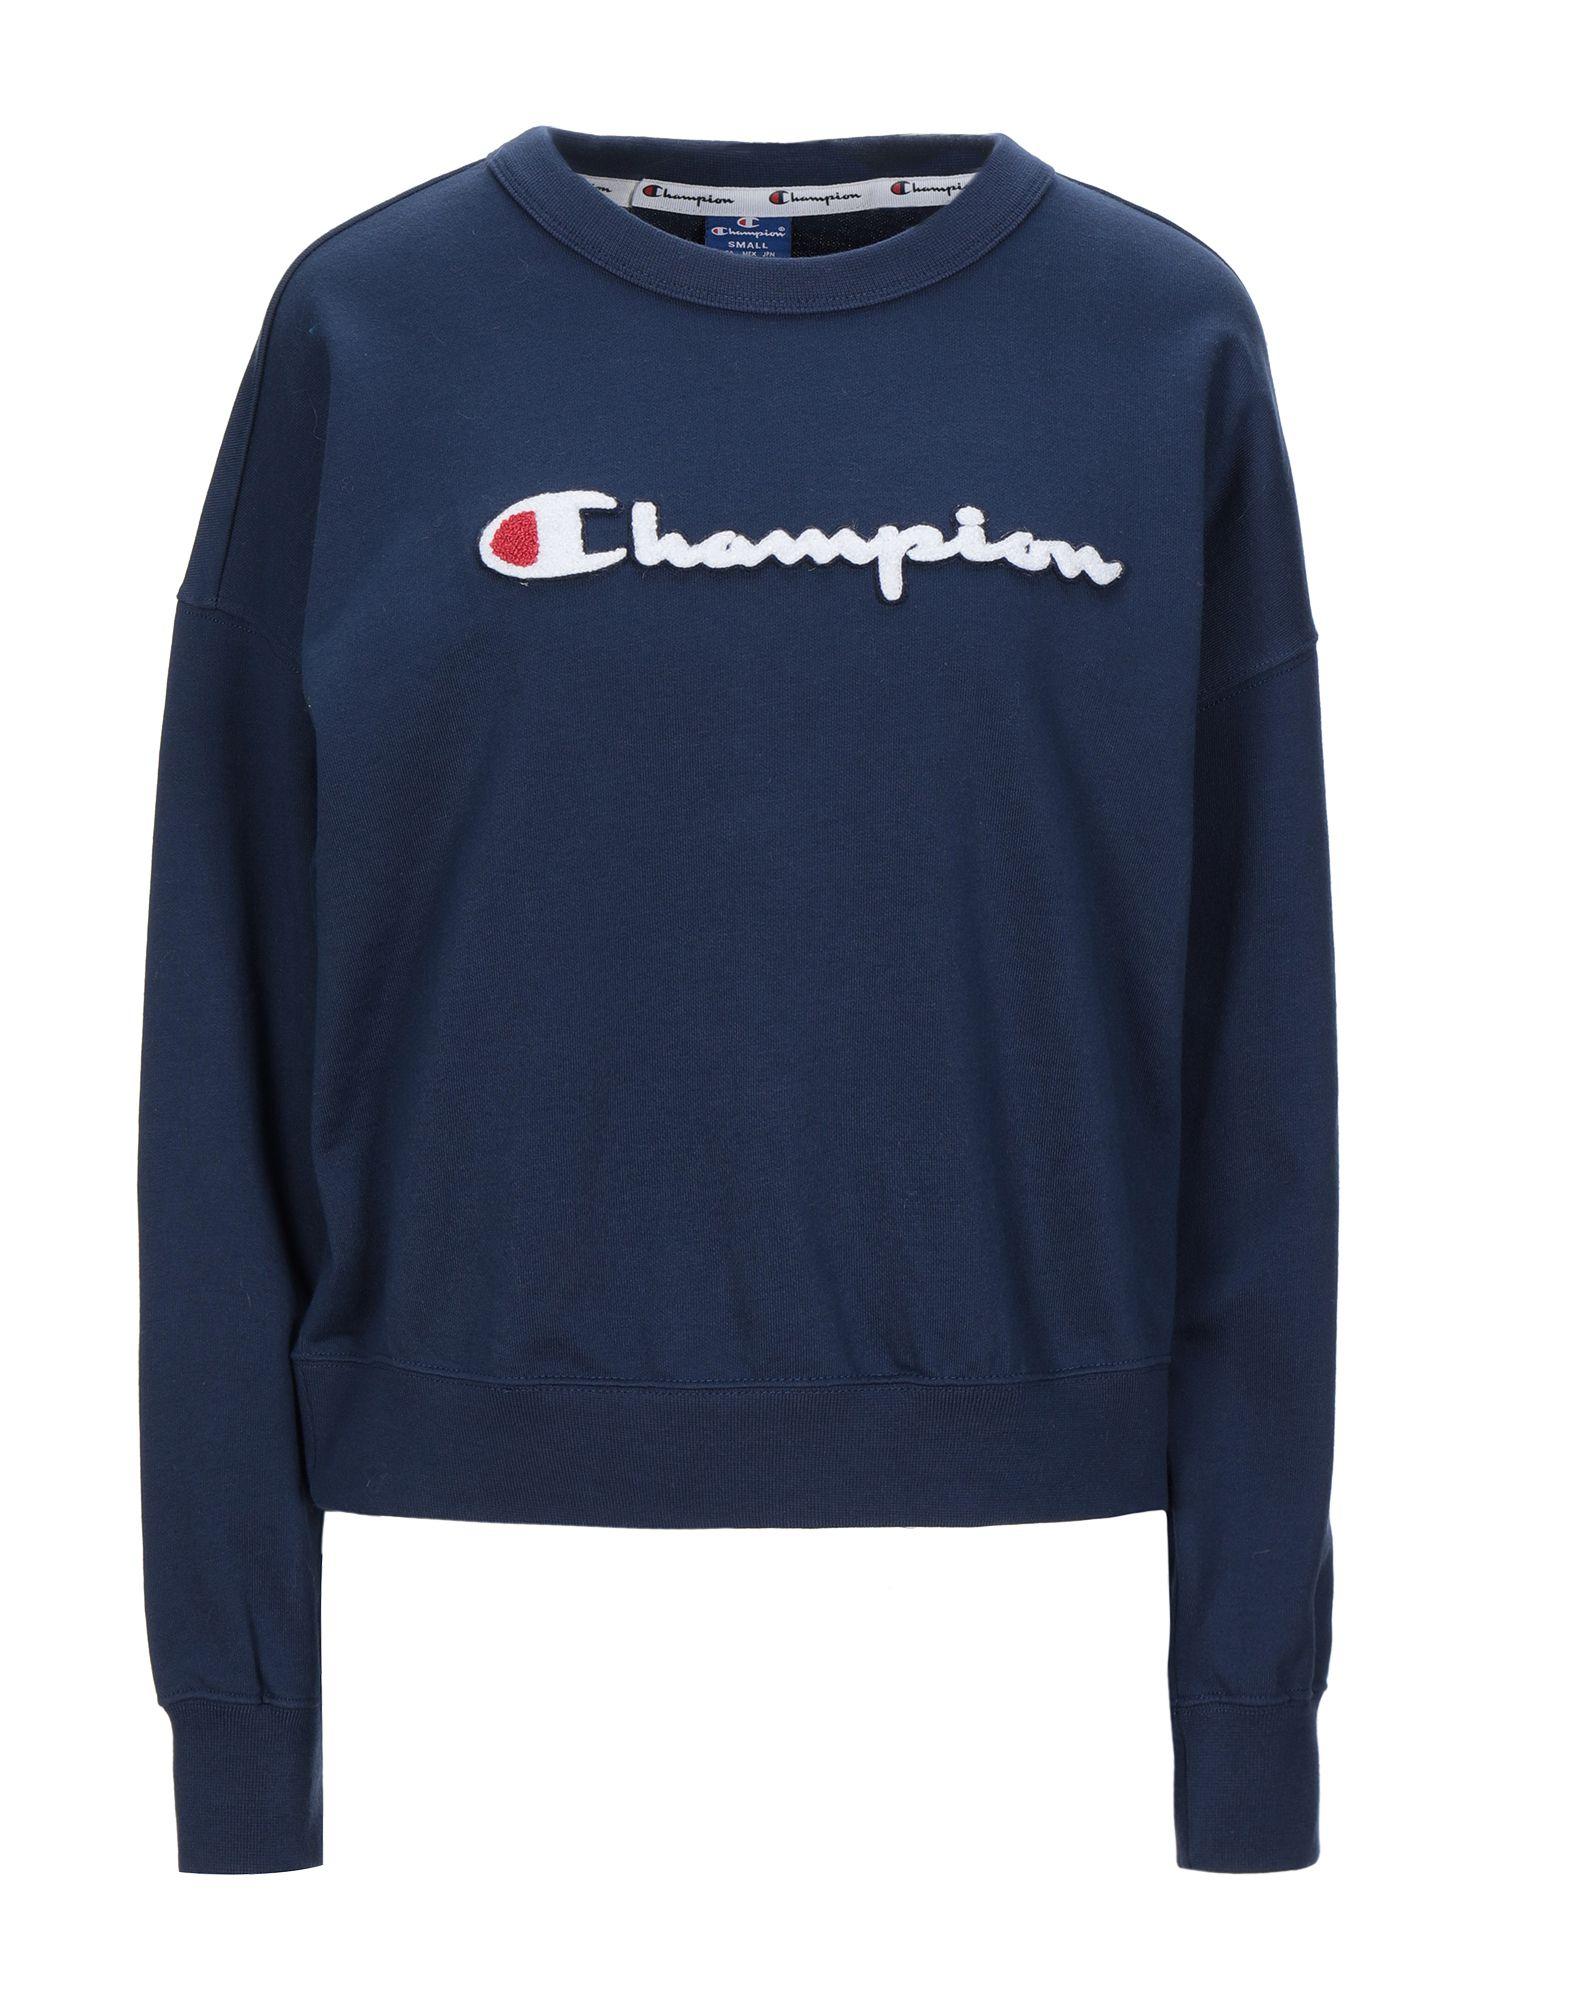 Champion Cotton Sweatshirt in Dark Blue (Blue) - Lyst